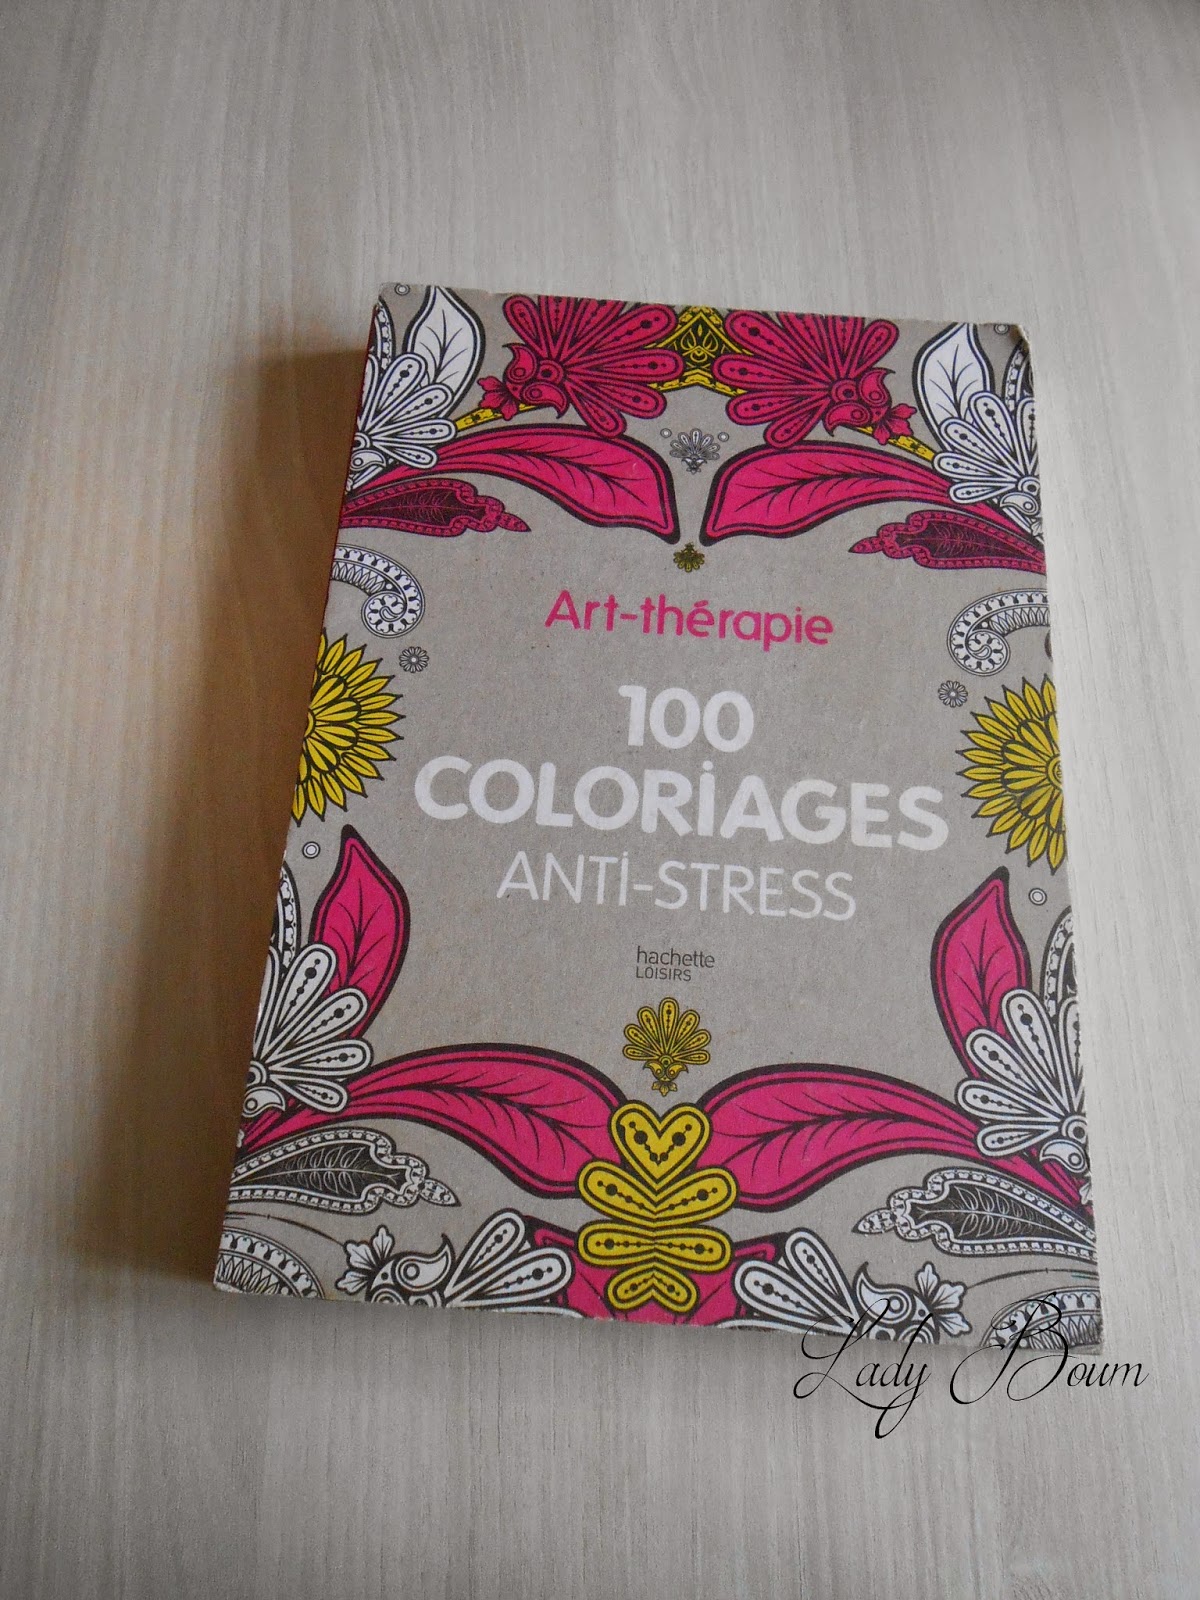 Le livre 100 coloriages anti stress de Hachette co te 12 90€ et il est disponible dans toutes librairies espace culturel leclerc fnac